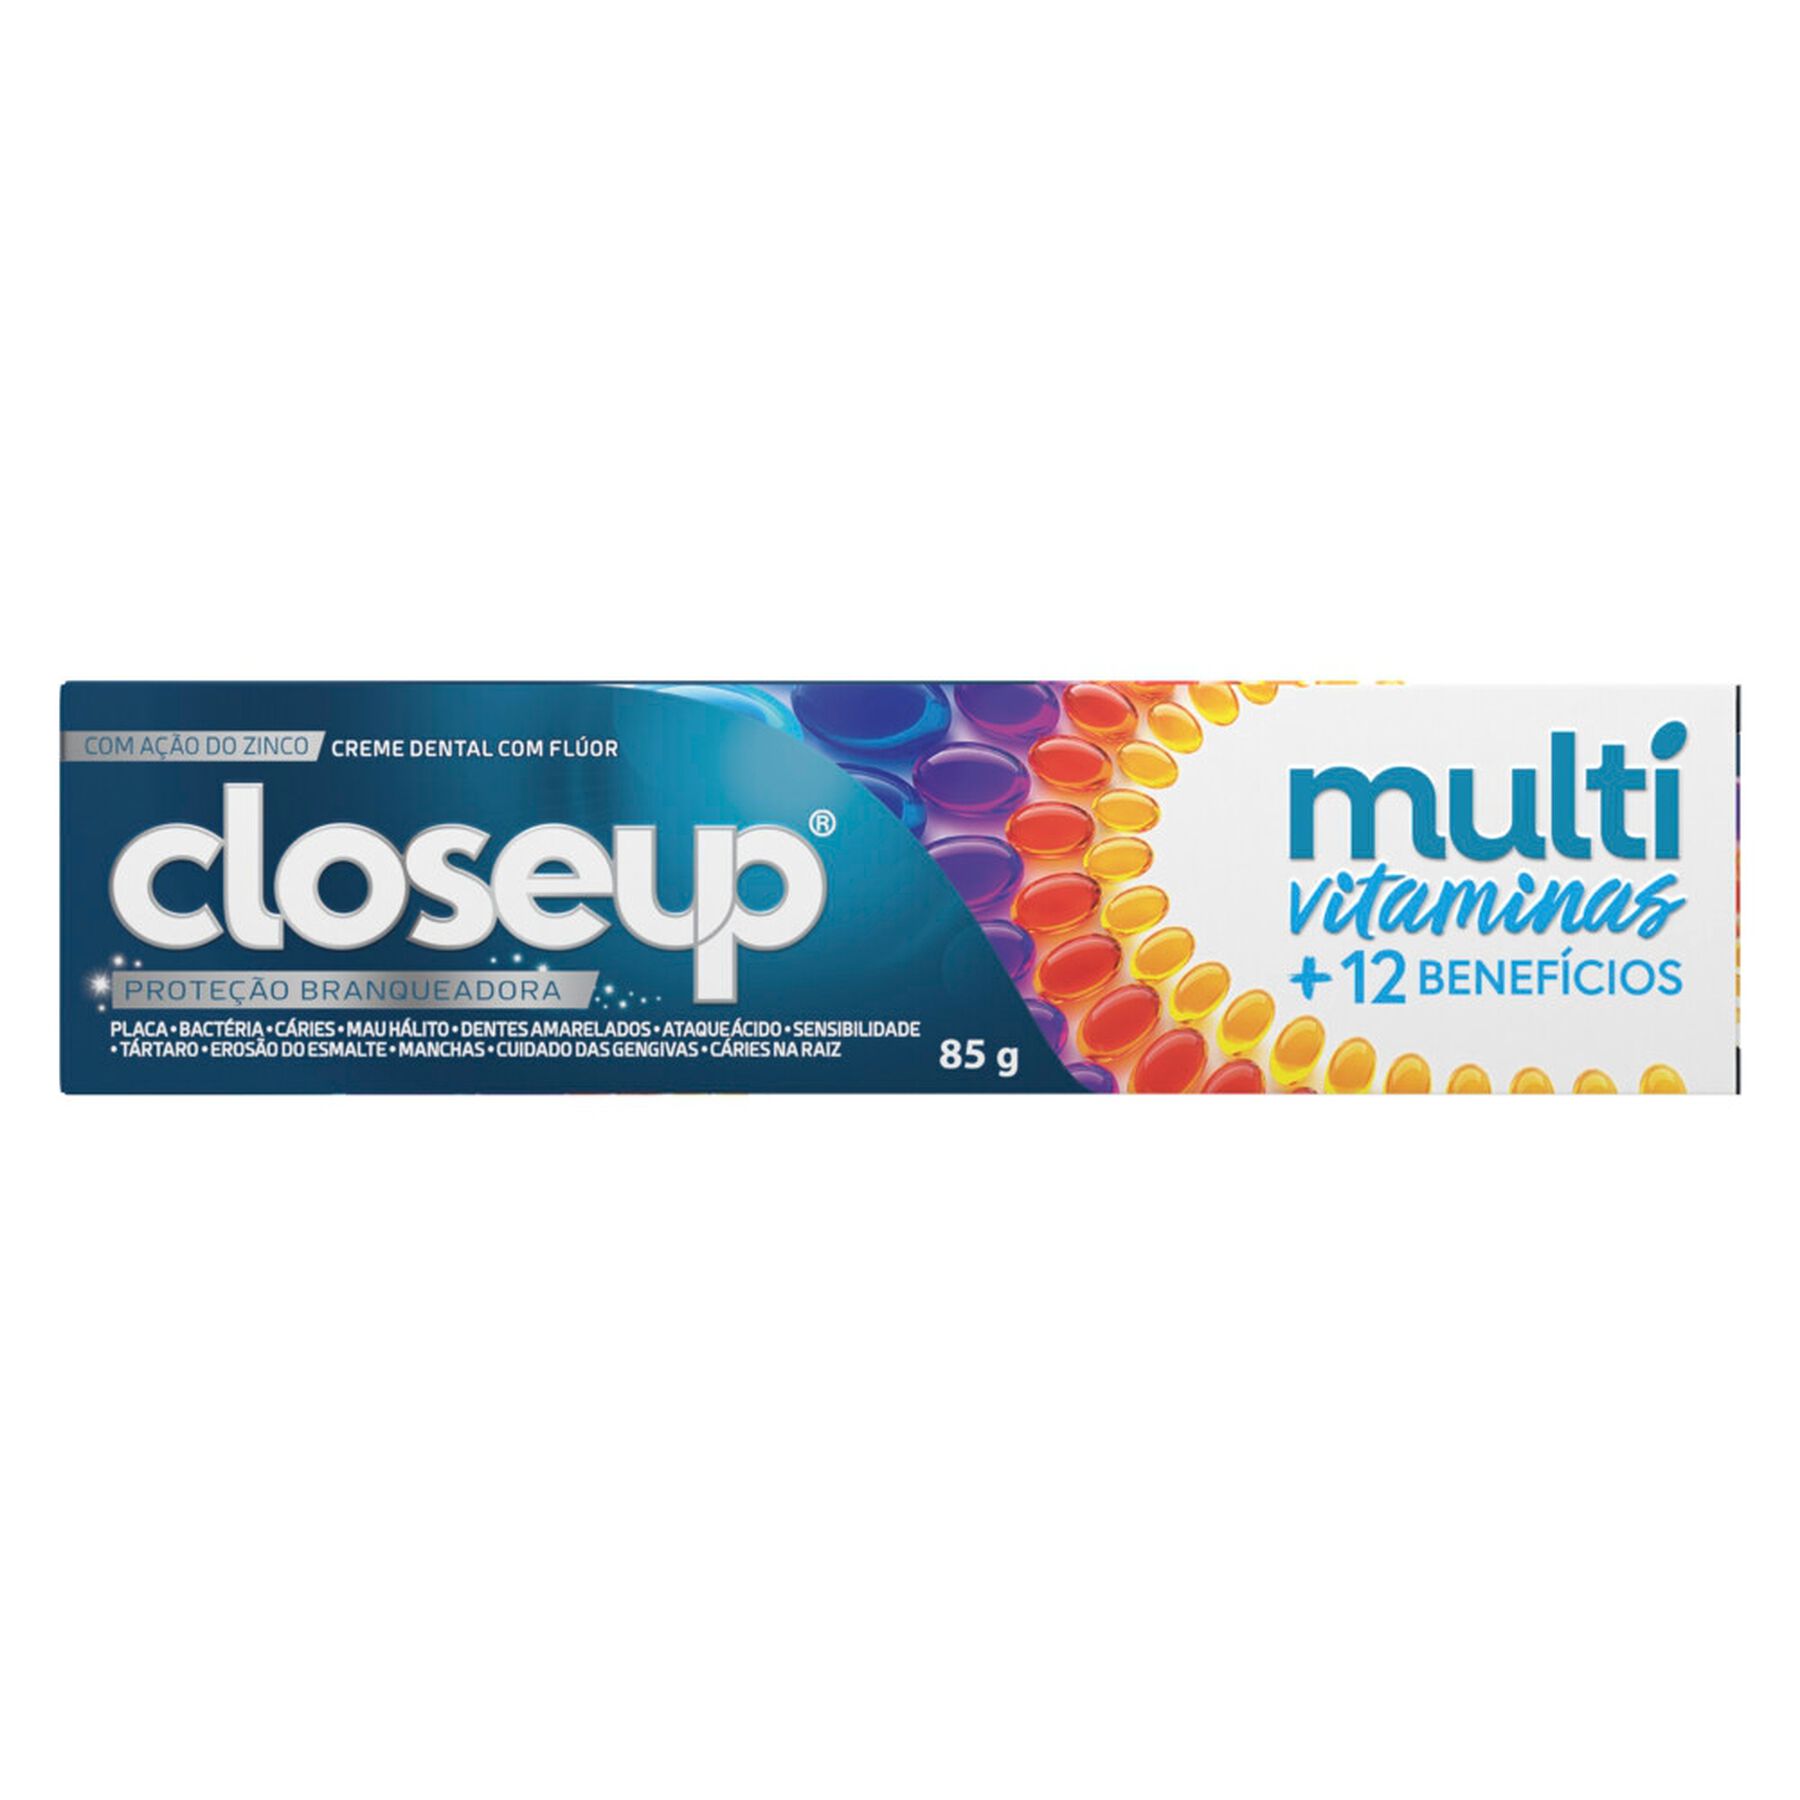 Creme Dental Proteção Branqueadora Closeup Multivitaminas + 12 Benefícios Caixa 85g